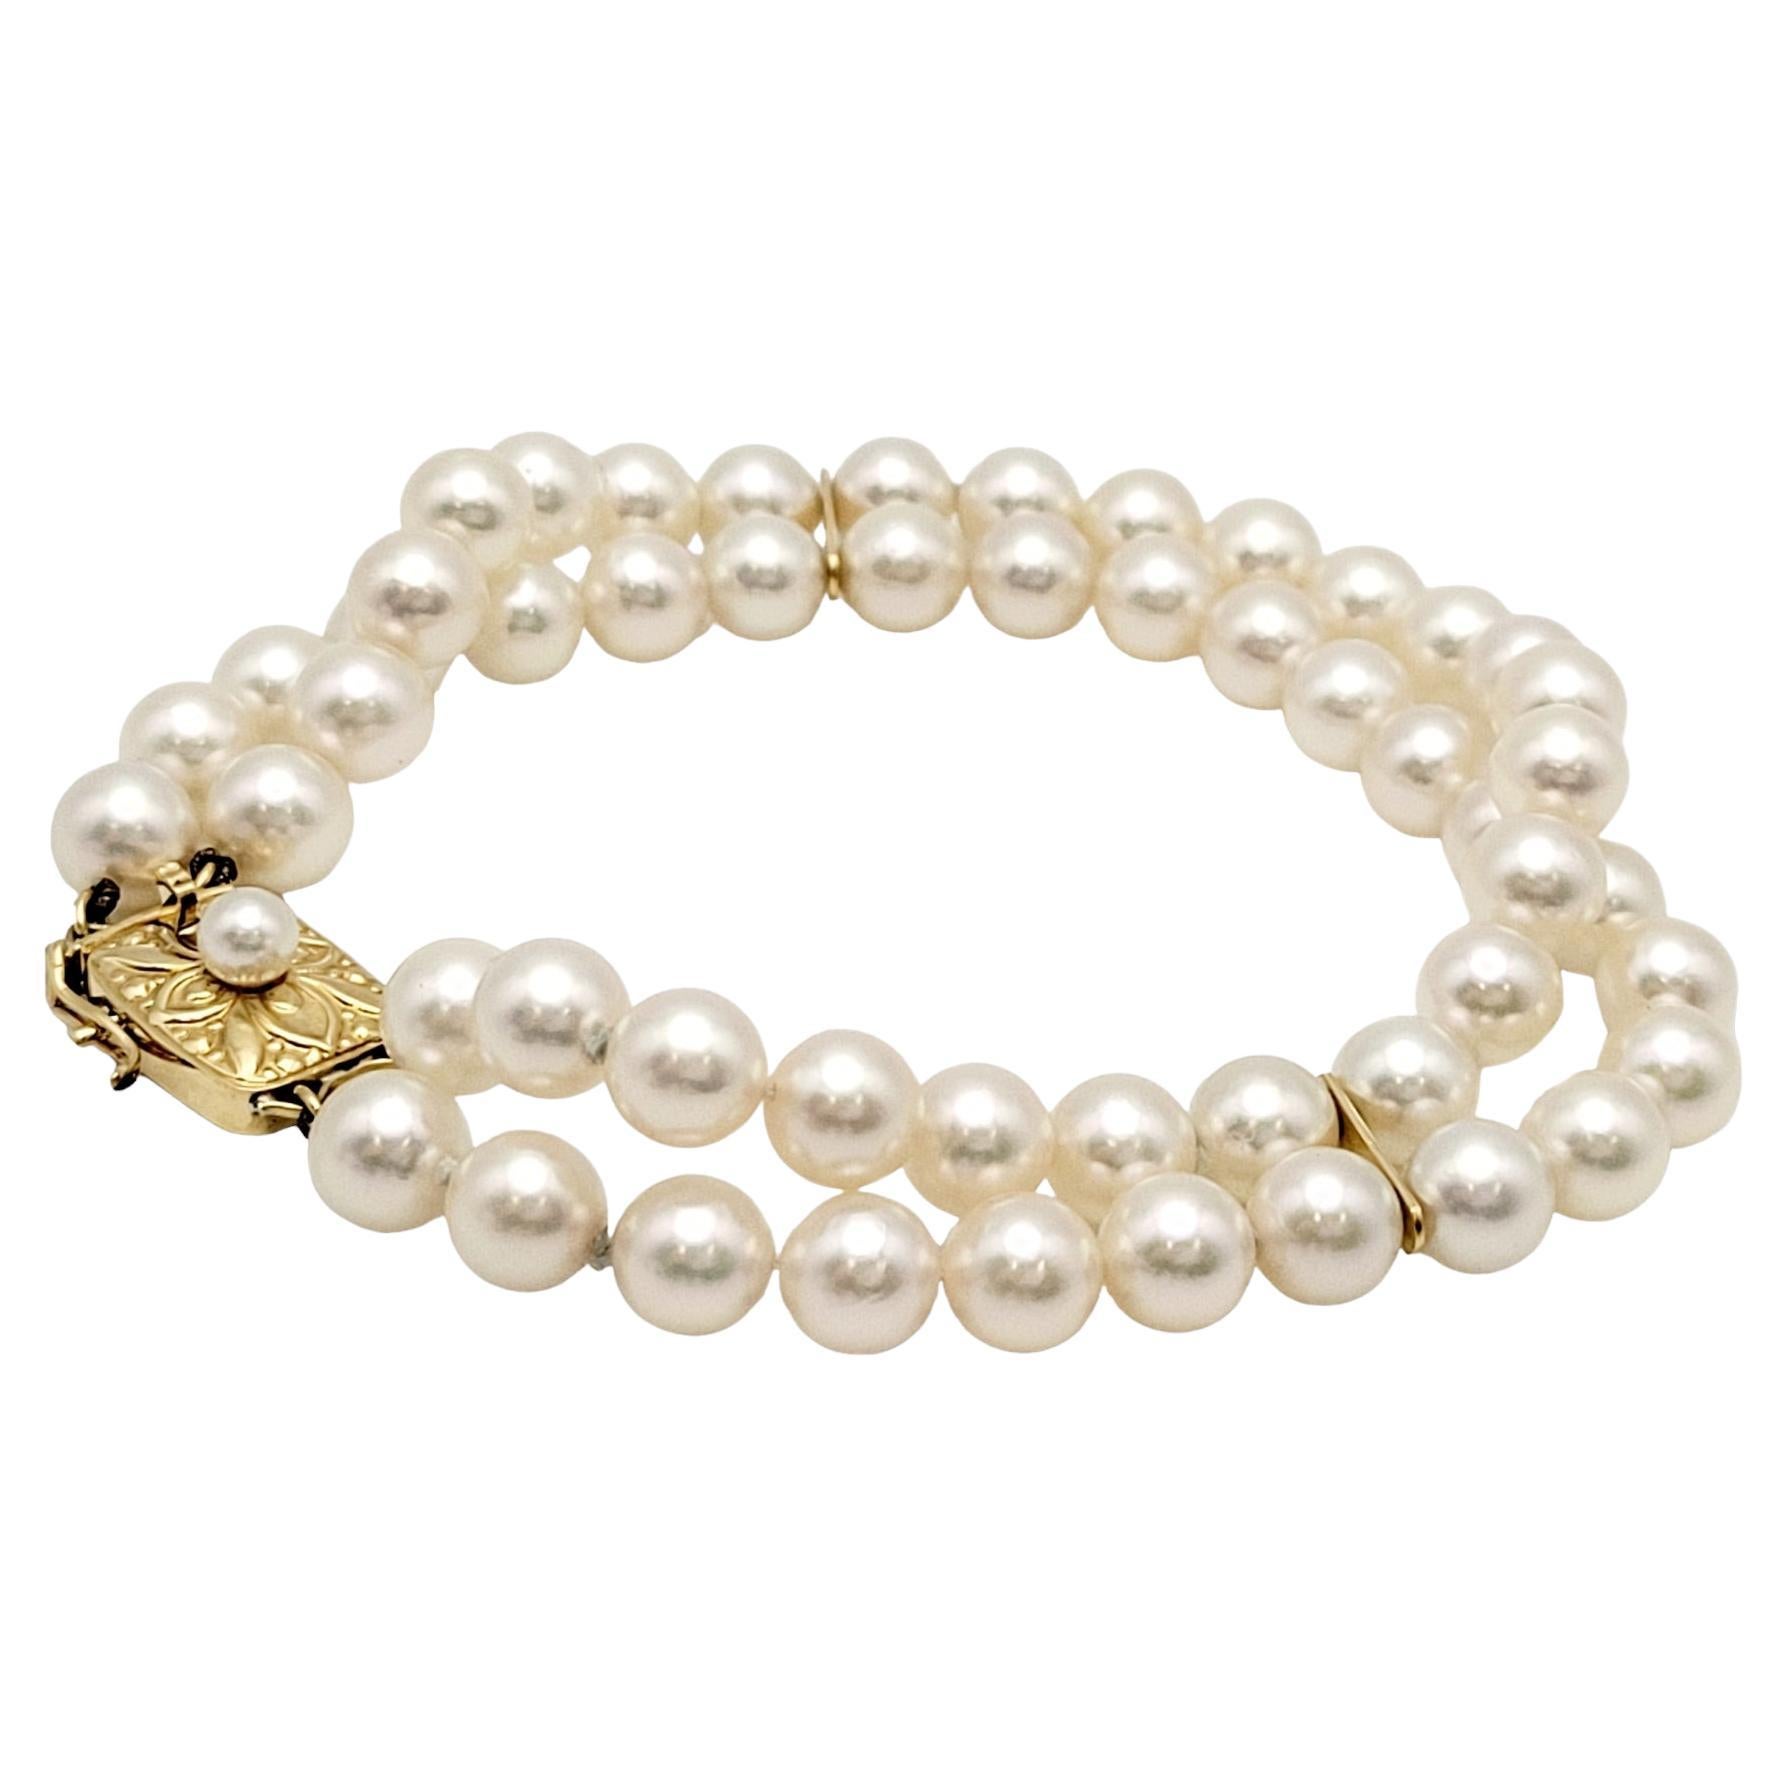 Ce bracelet intemporel présente une fusion harmonieuse de perles classiques et d'or jaune 18 carats opulent. Le bracelet est composé d'un double rang de perles lustrées, chacune étant méticuleusement sélectionnée pour son éclat et son uniformité.